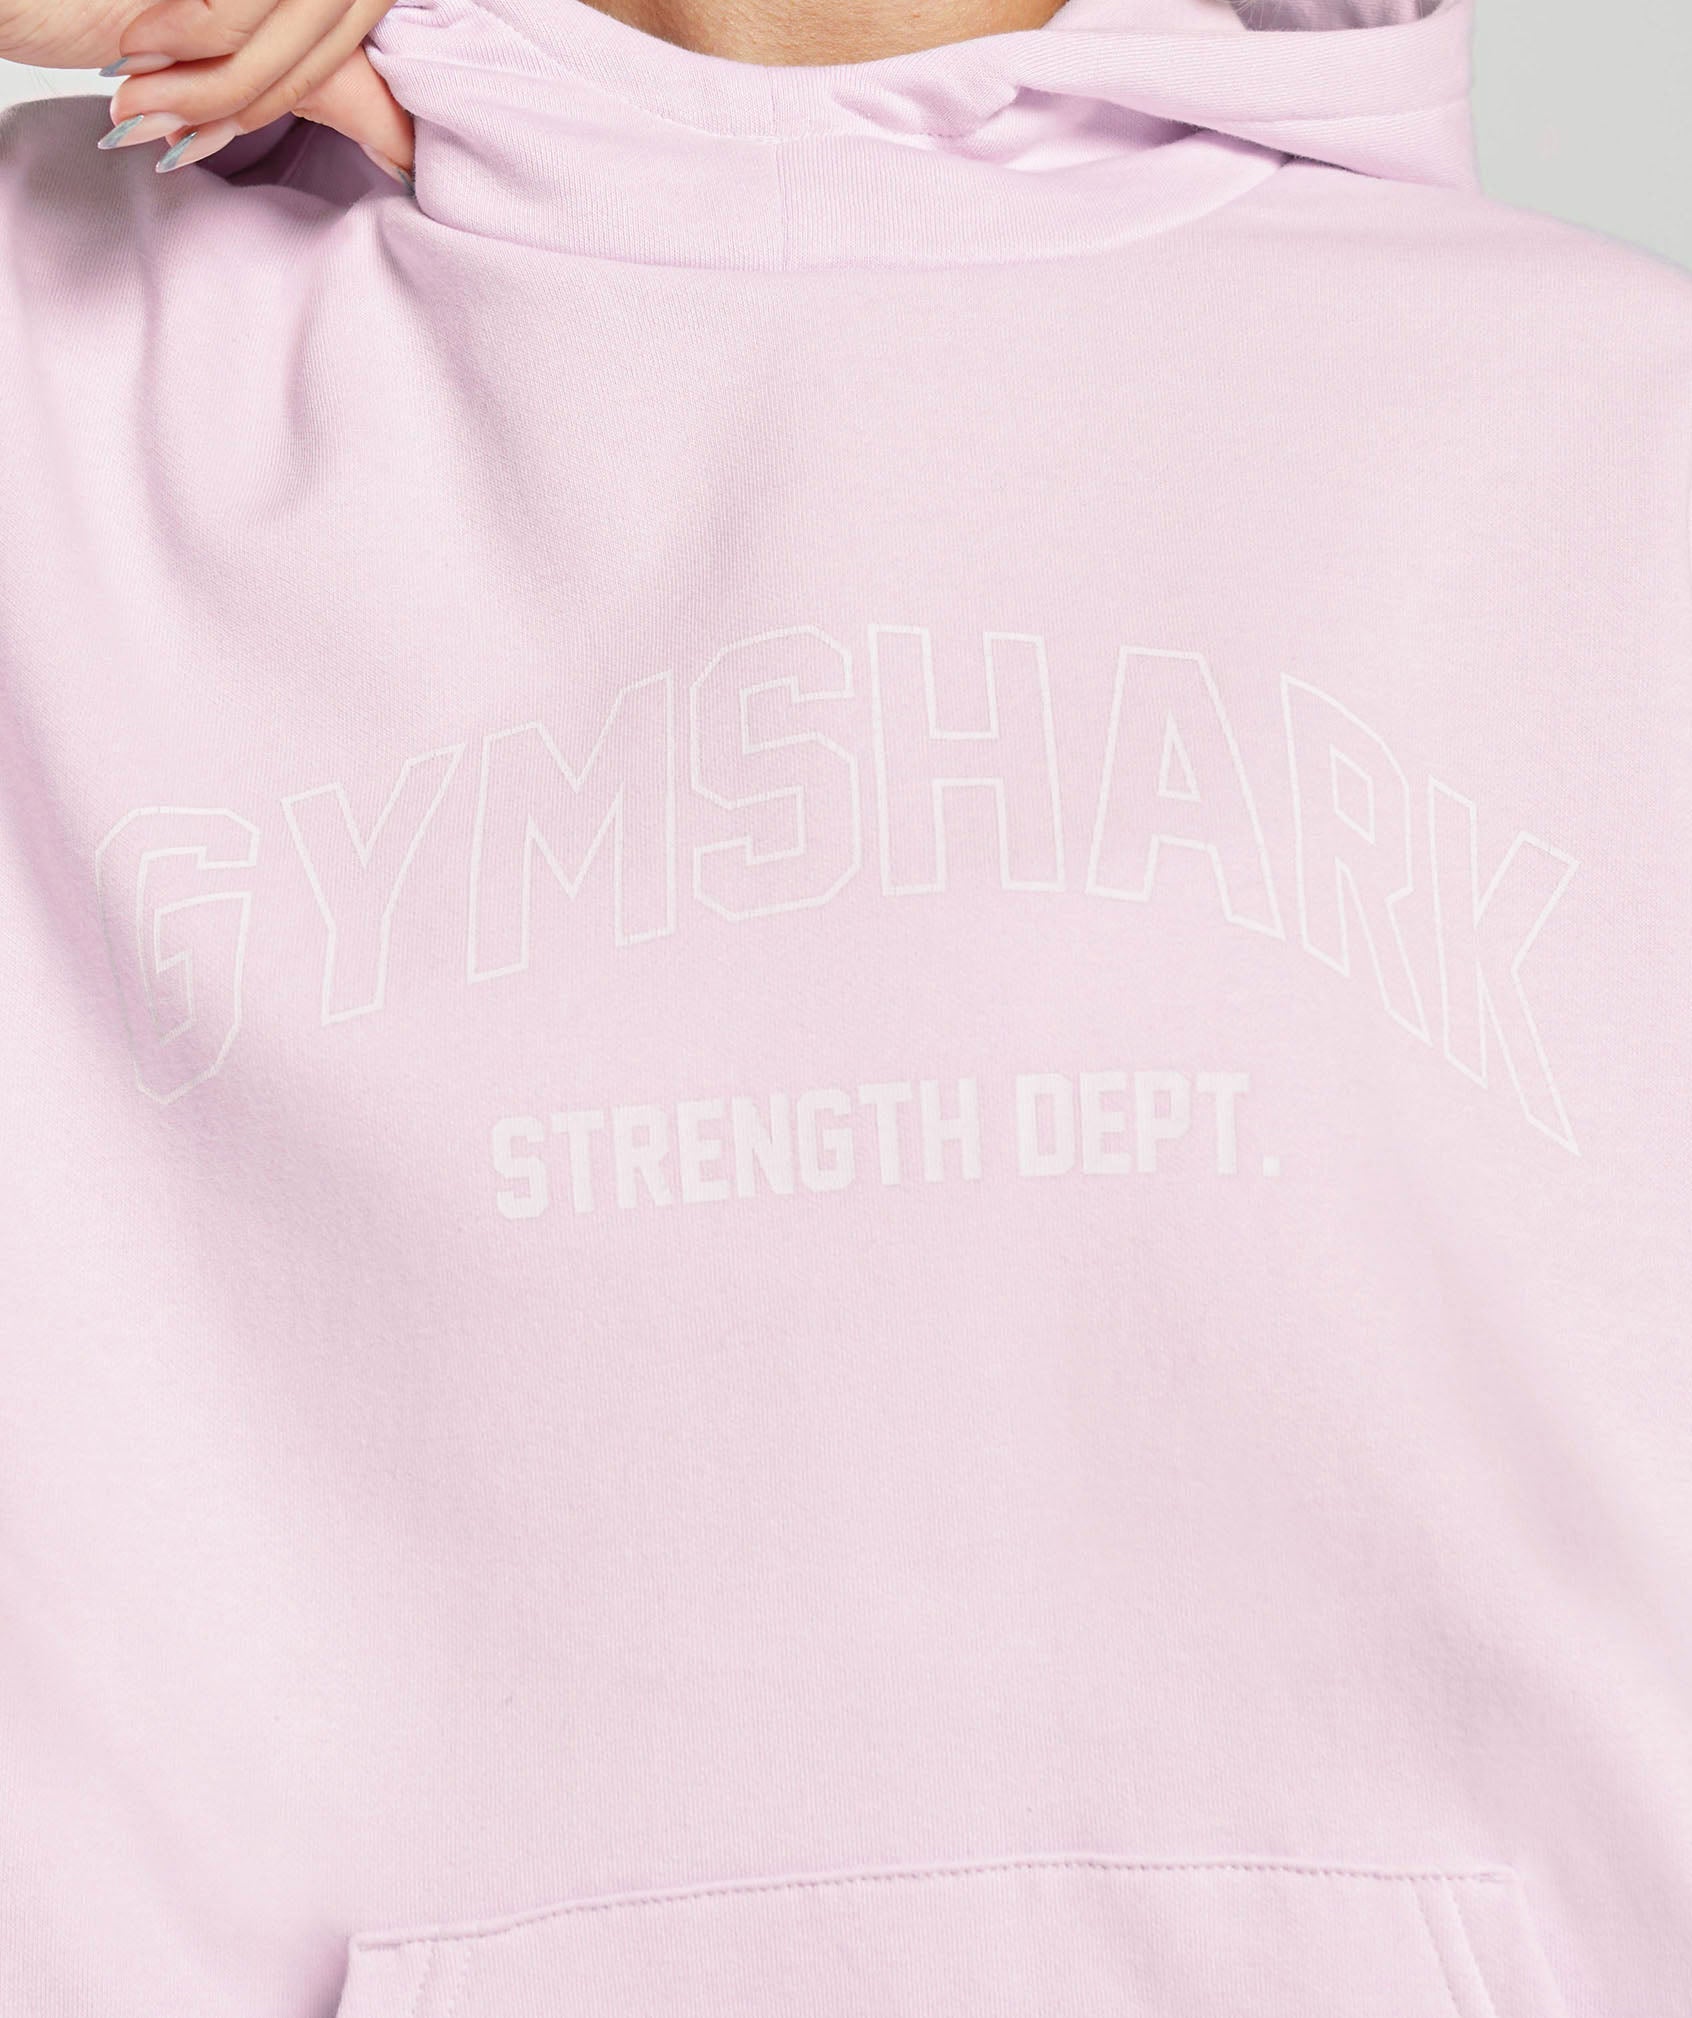 Strength Department Graphic Hoodie in Lemonade Pink - view 5